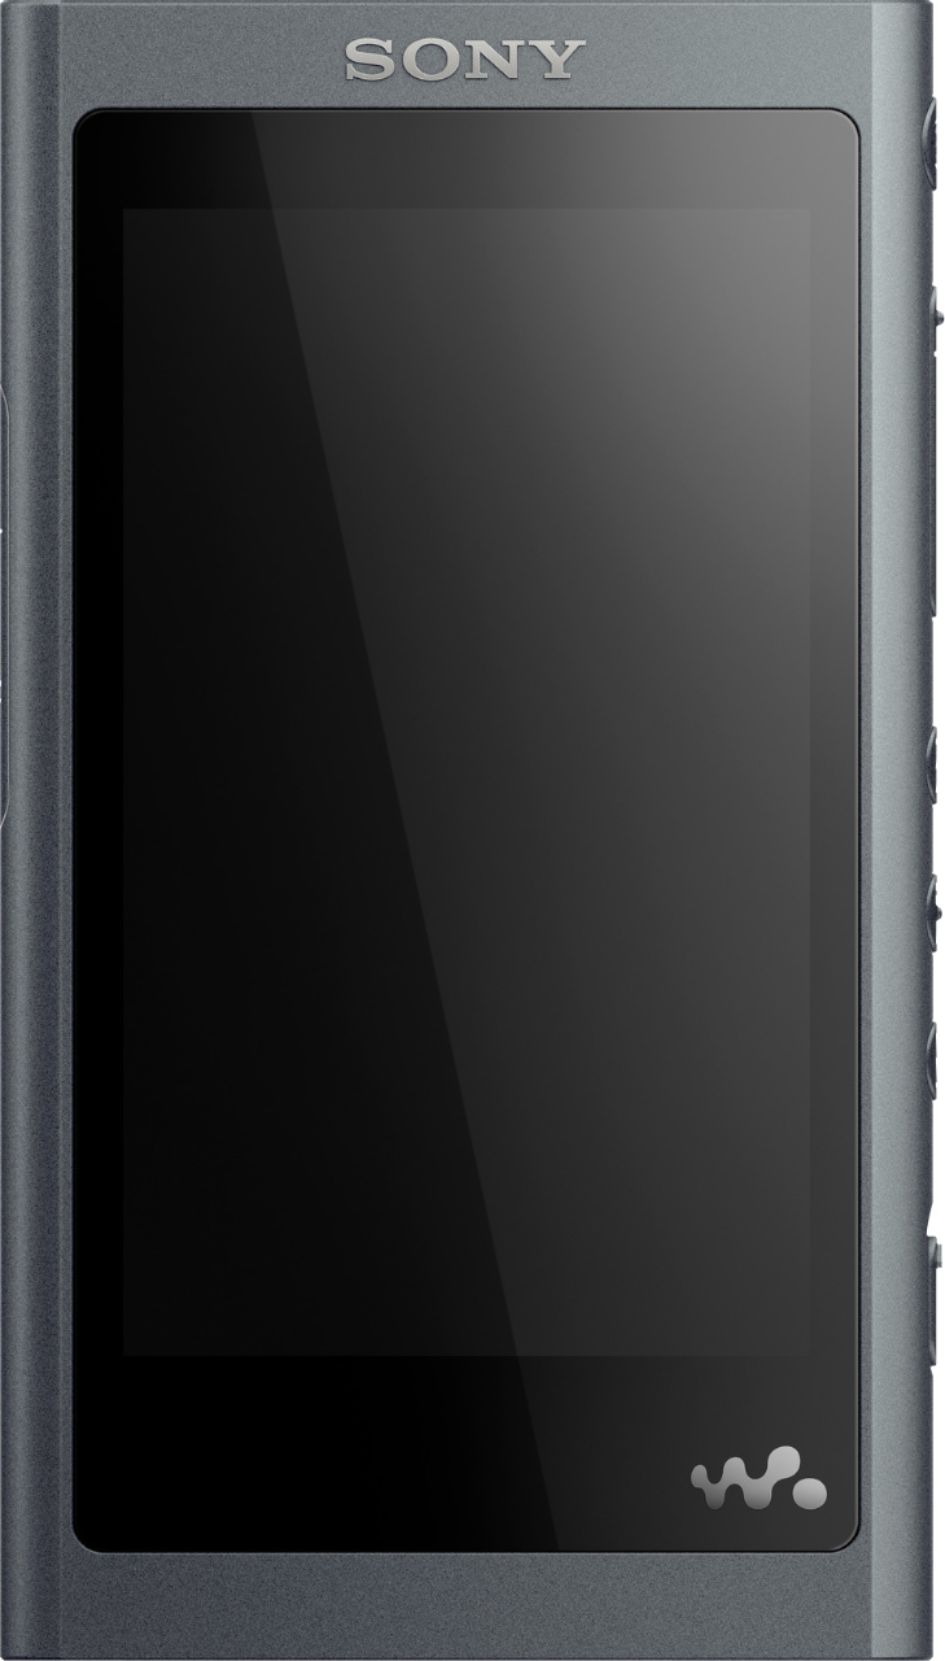 オーディオ機器 ポータブルプレーヤー Sony Walkman NW-A55 Hi-Res 16GB* MP3 Player Black  - Best Buy